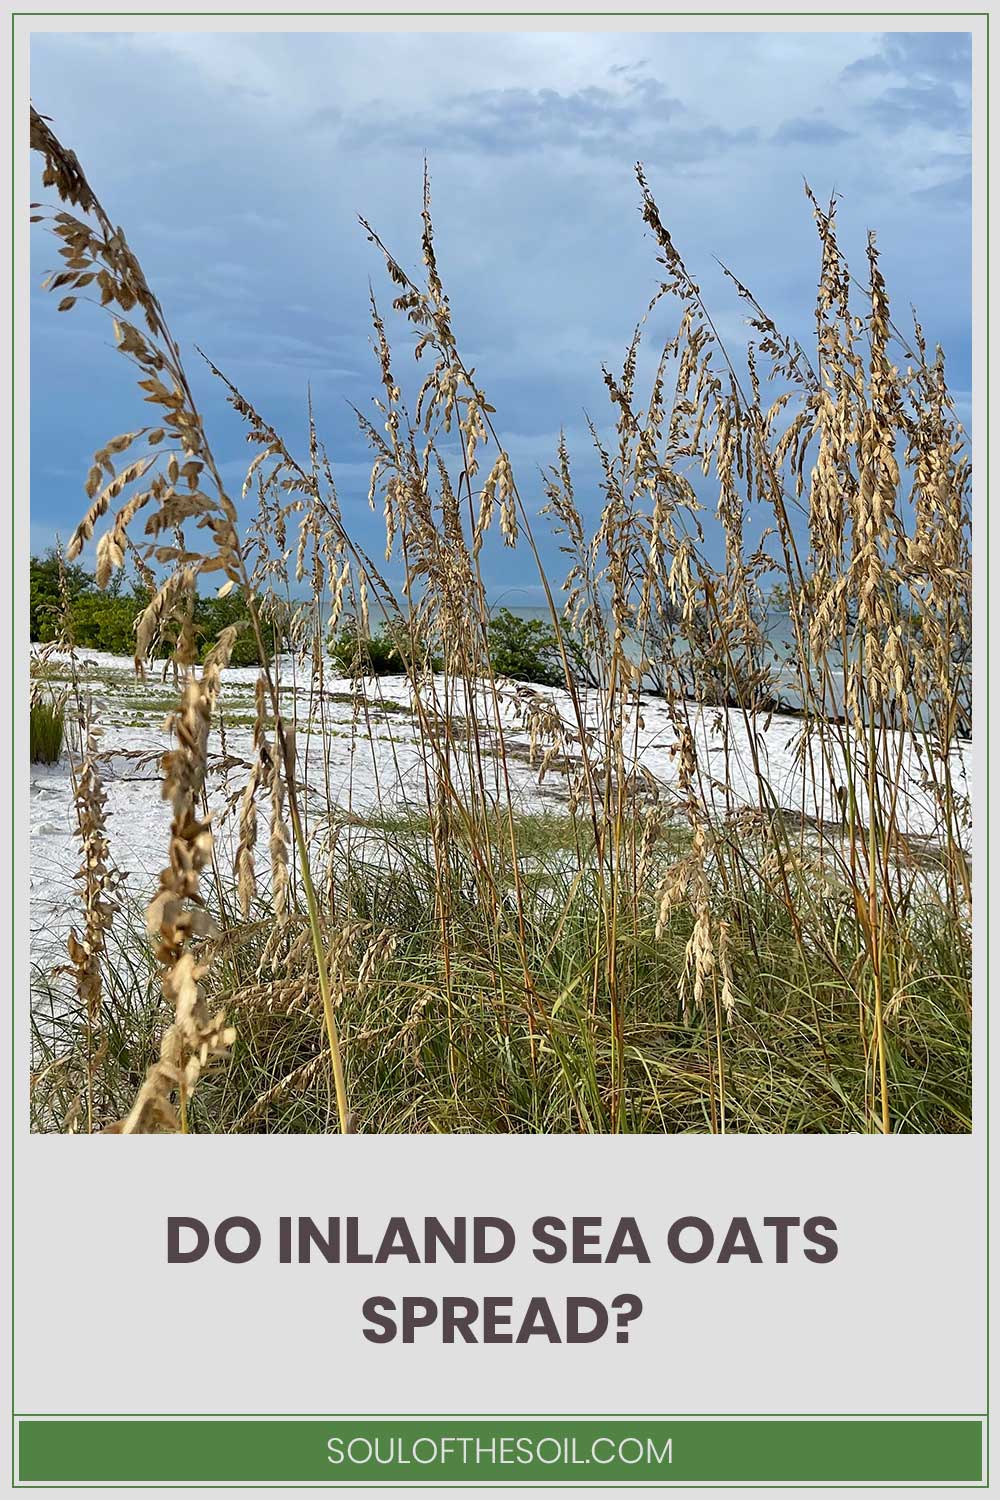 Sea oats near a beach - do they spread?